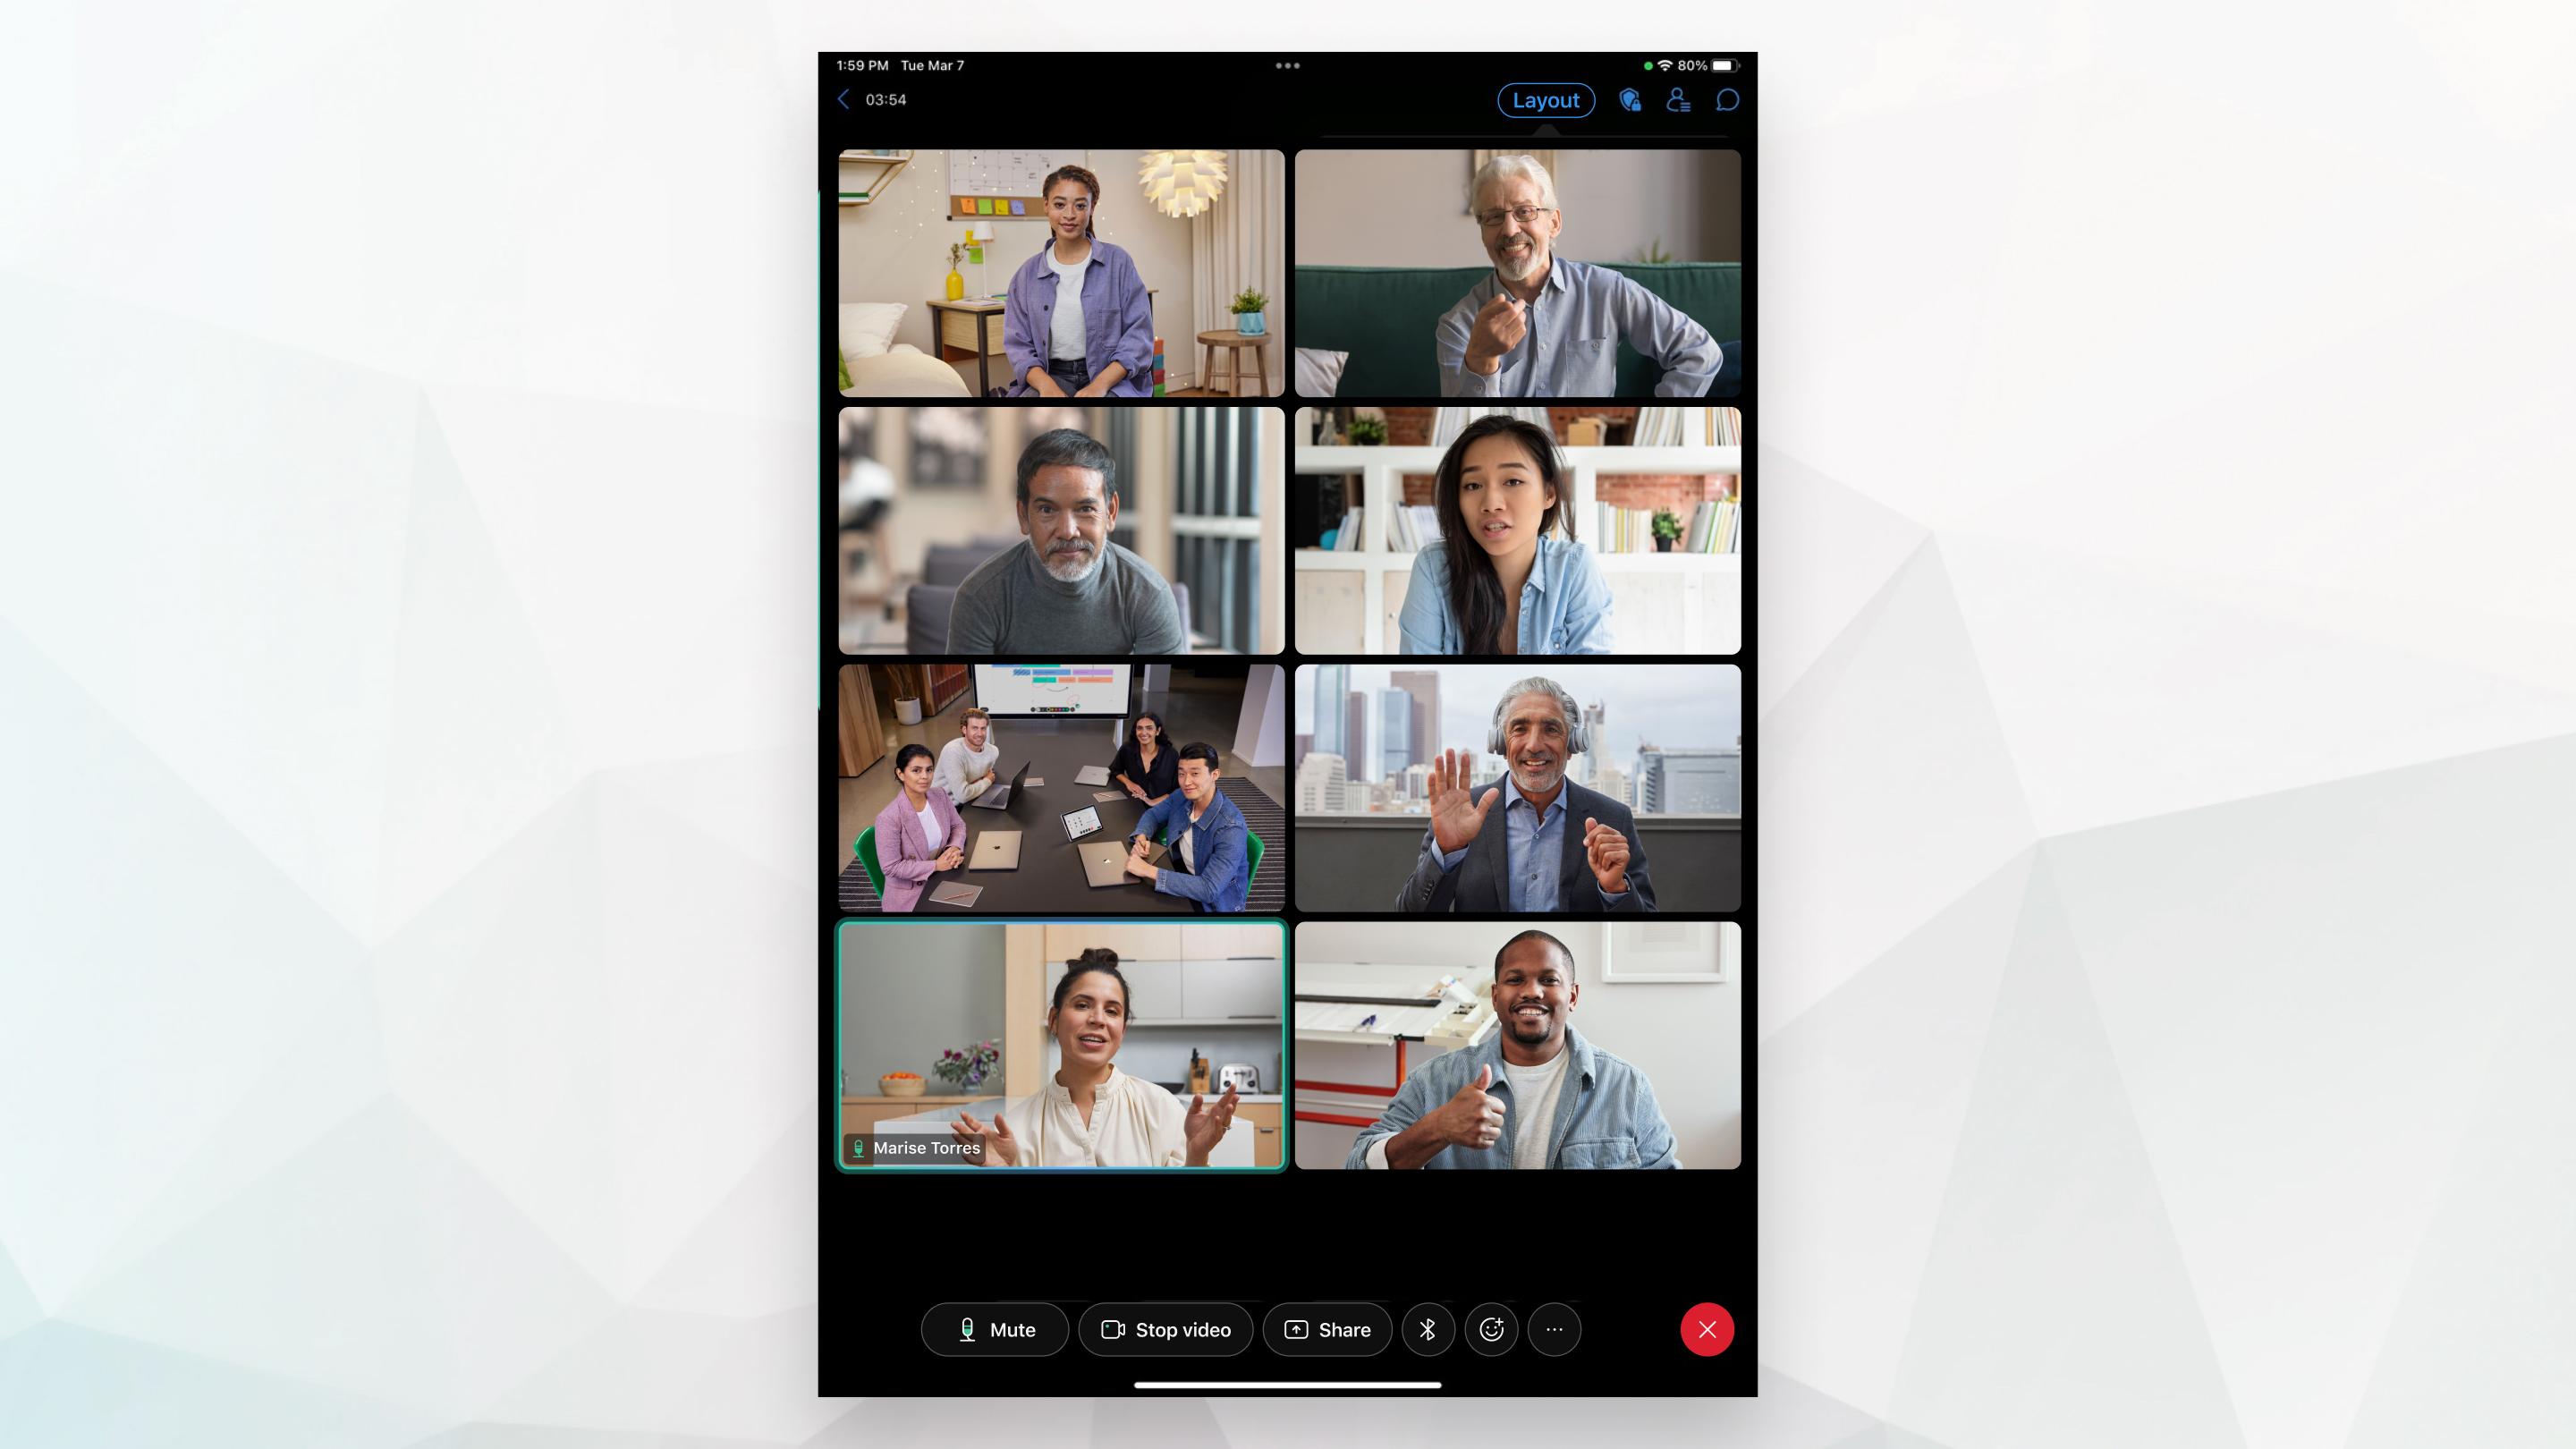 2x4 vizualizare caroiaj în timpul unei întâlniri pe iPad